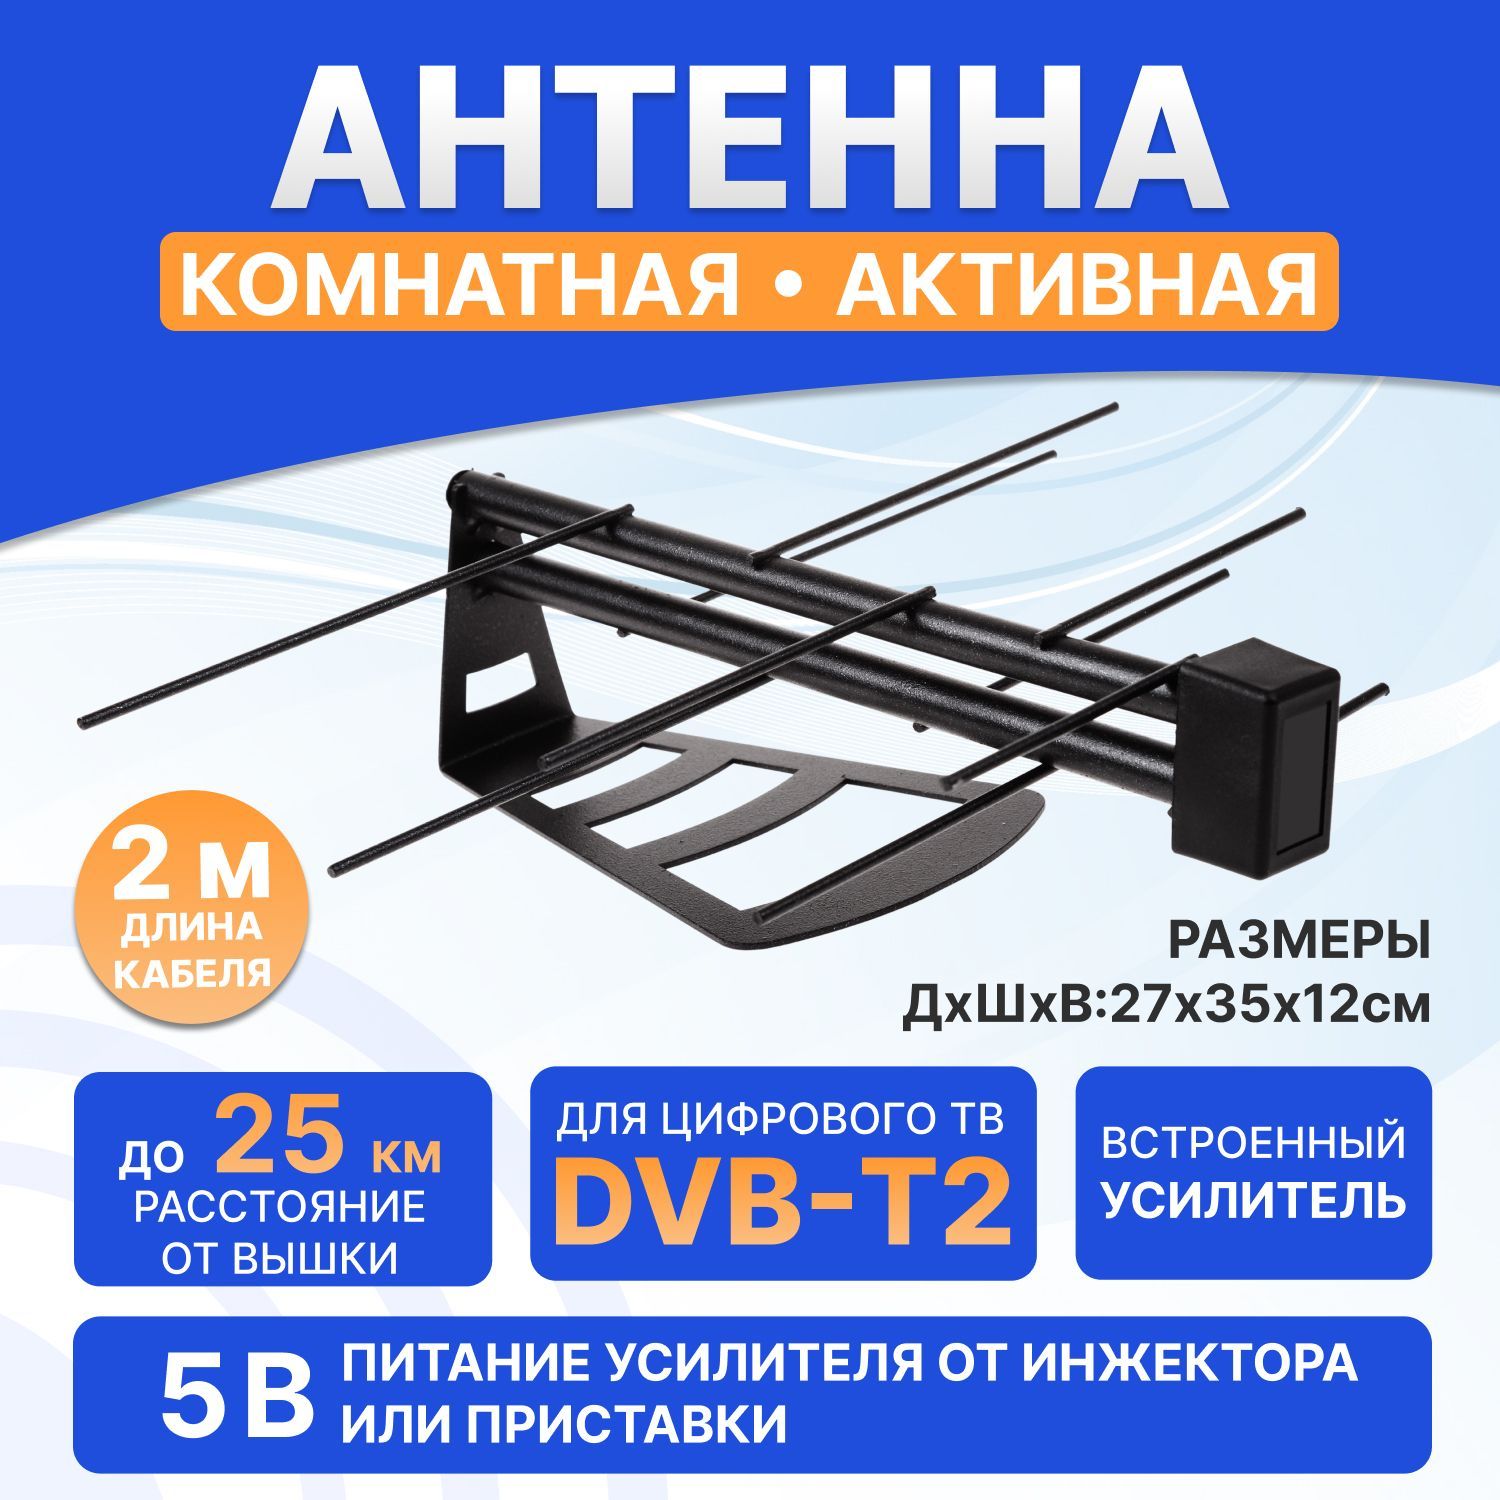 Антенны для цифрового телевидения DVB-T2